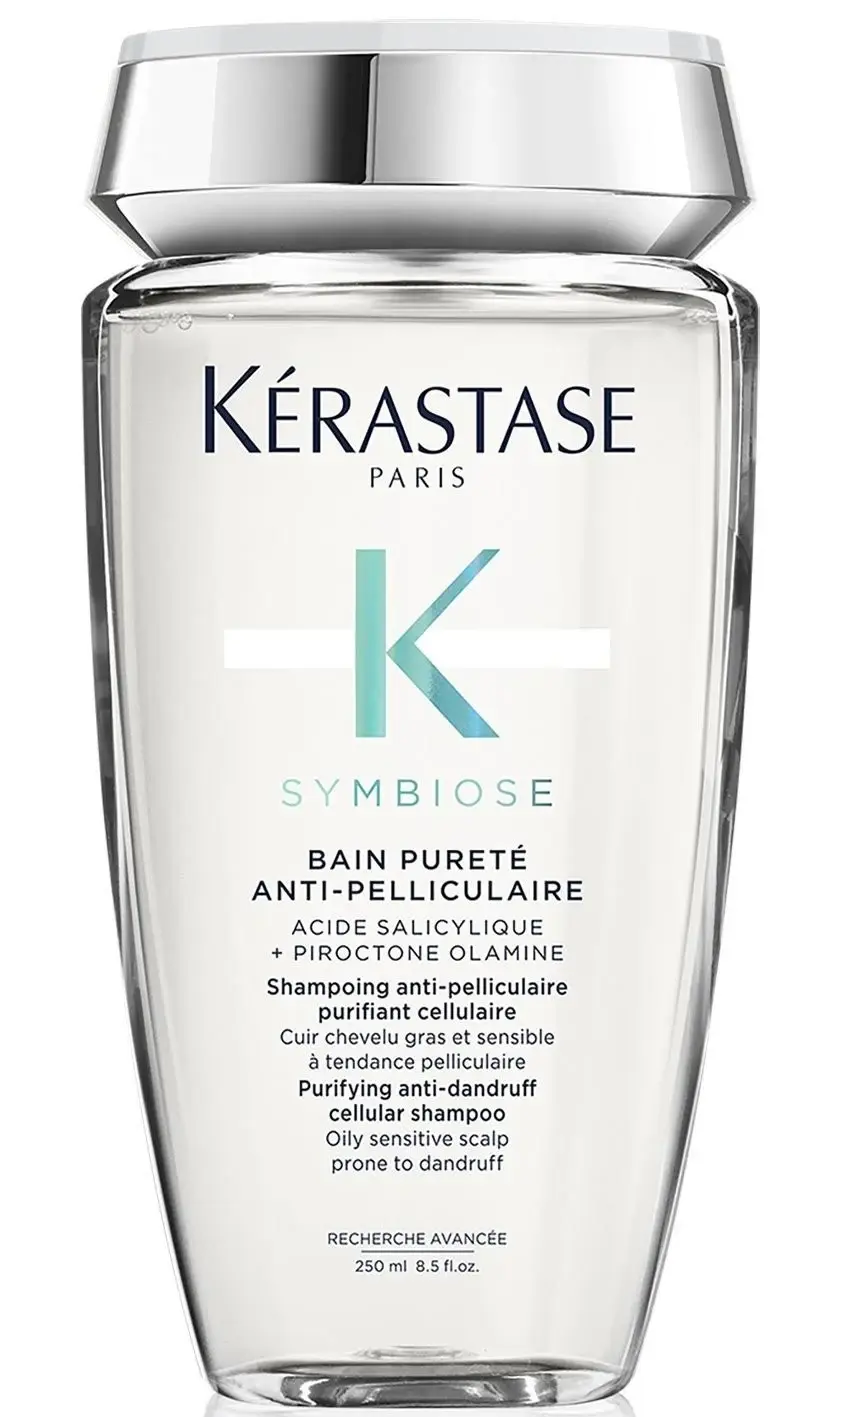 Kérastase Symbiose Bain Pureté Anti-Pelliculaire Shampoo 250 ml